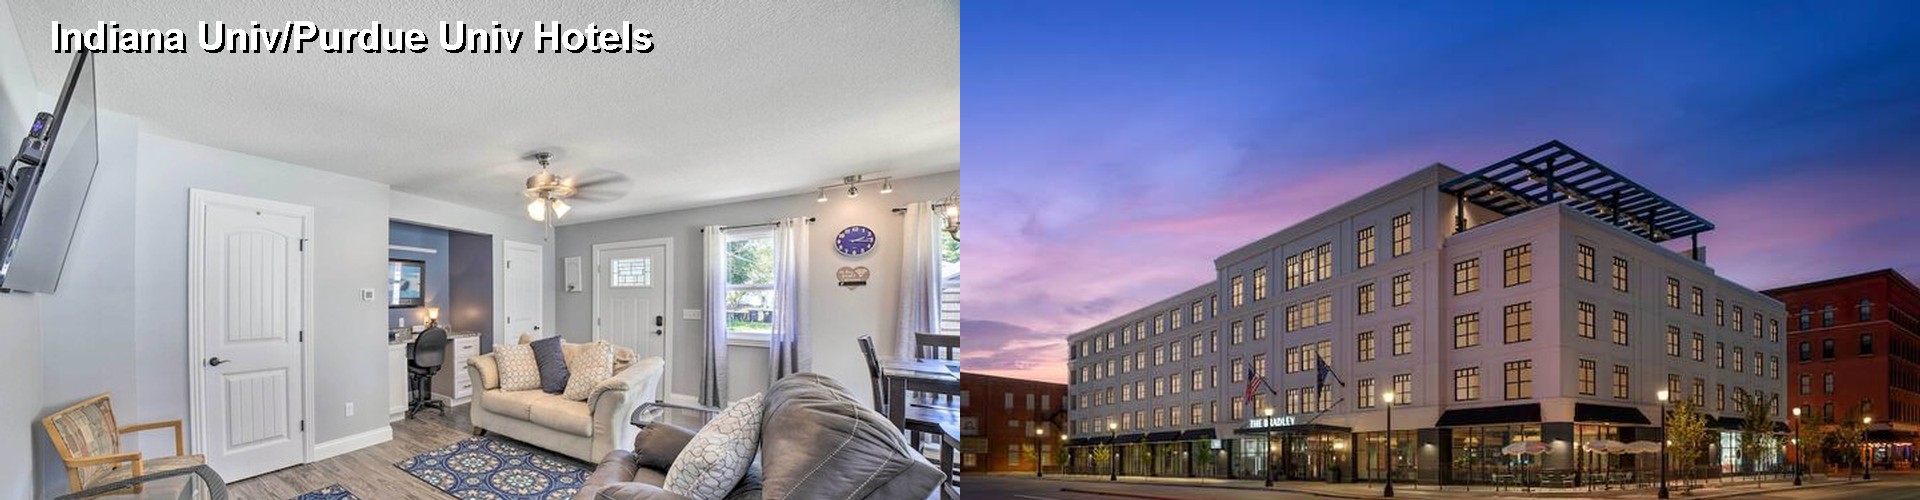 5 Best Hotels near Indiana Univ/Purdue Univ